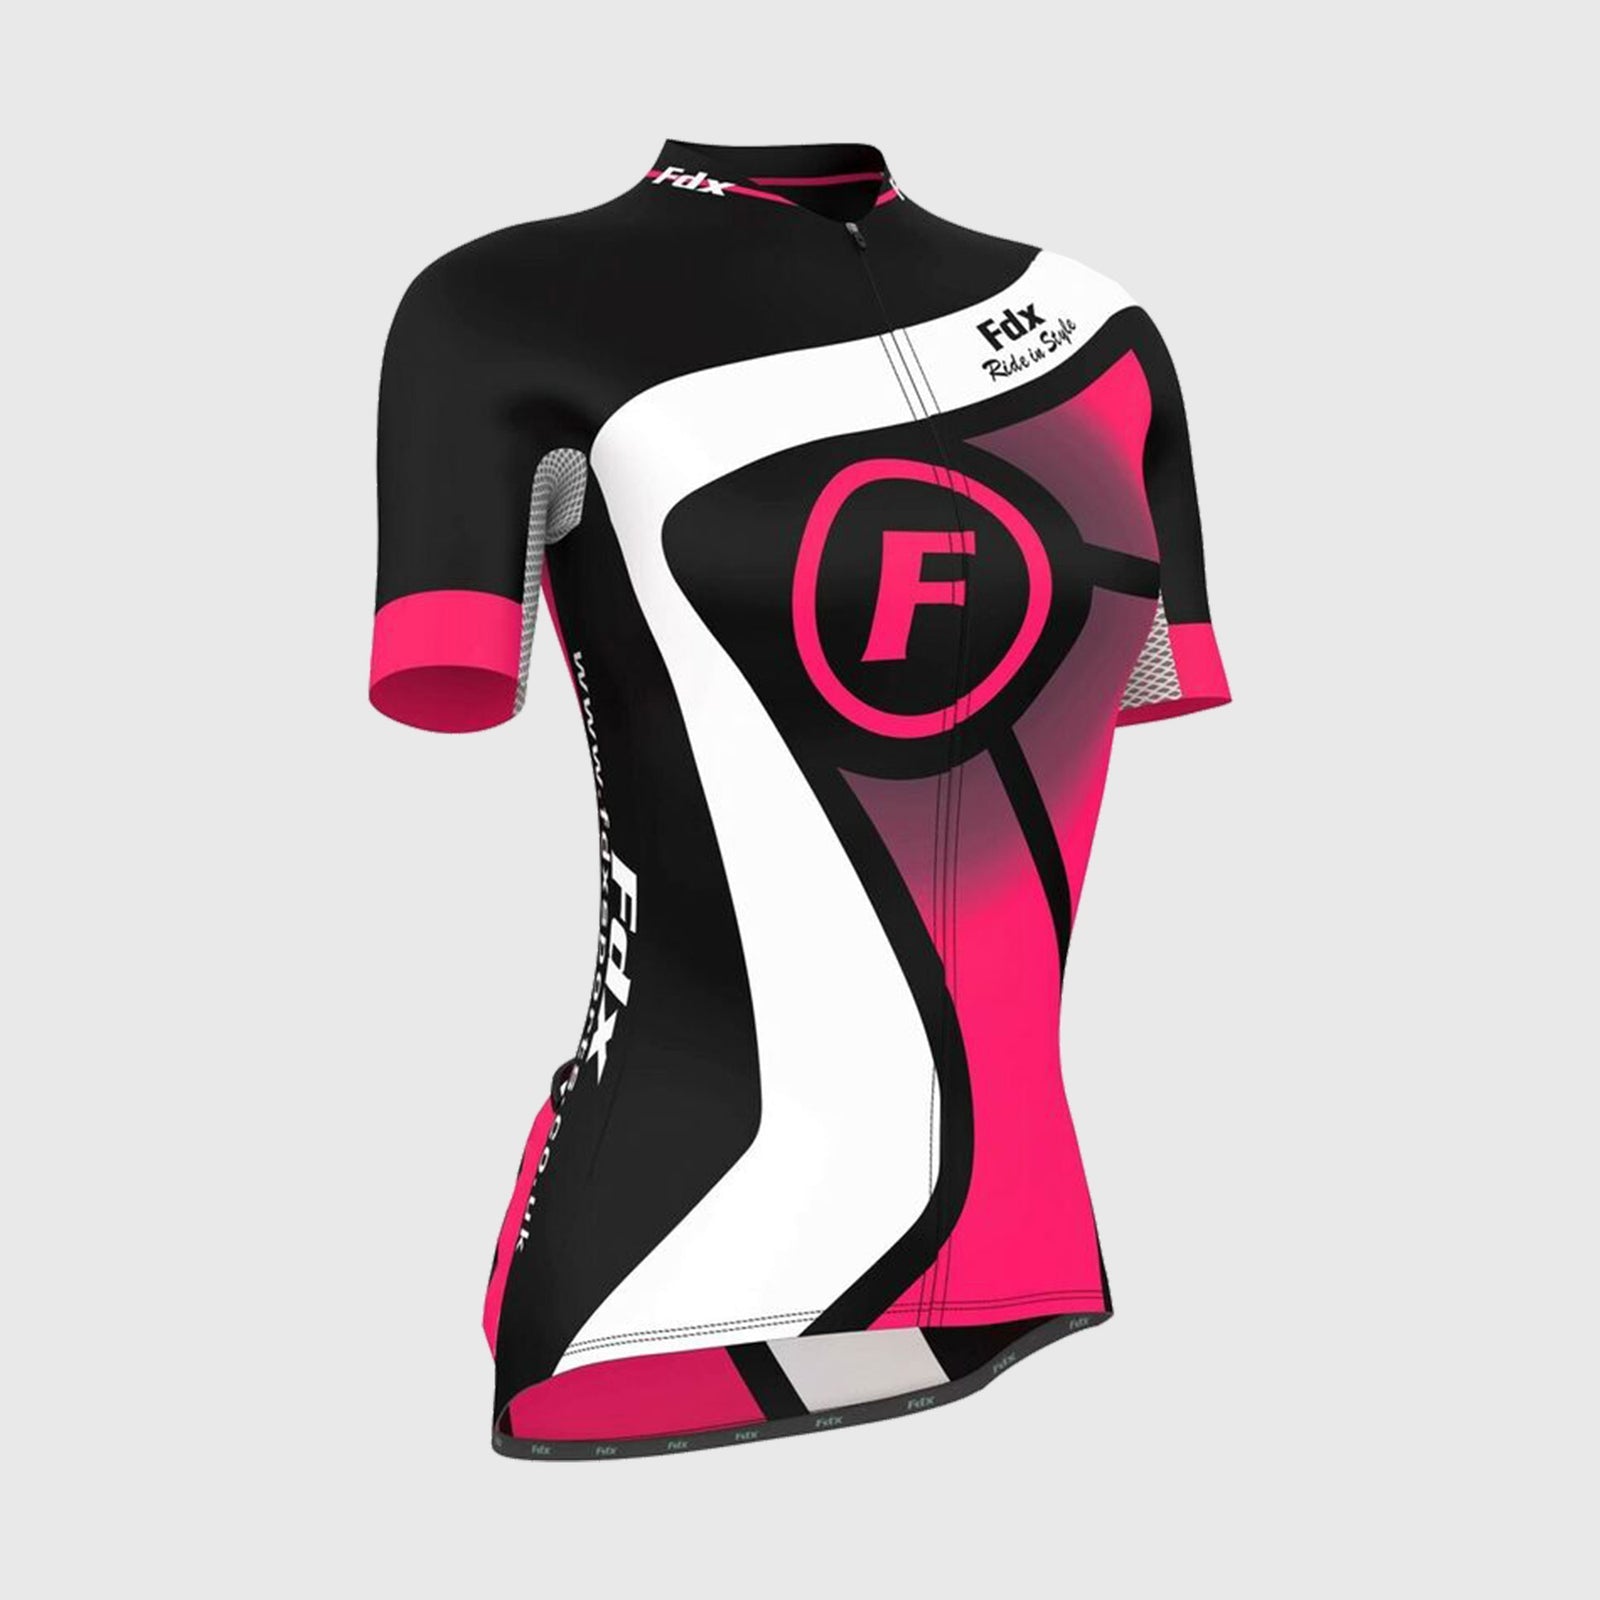 Fdx Womens Black & Pink Short Sleeve Cycling Jersey for Summer Best Road Bike Wear Top Light Weight, Full Zipper, Pockets & Hi-viz Reflectors - Signature